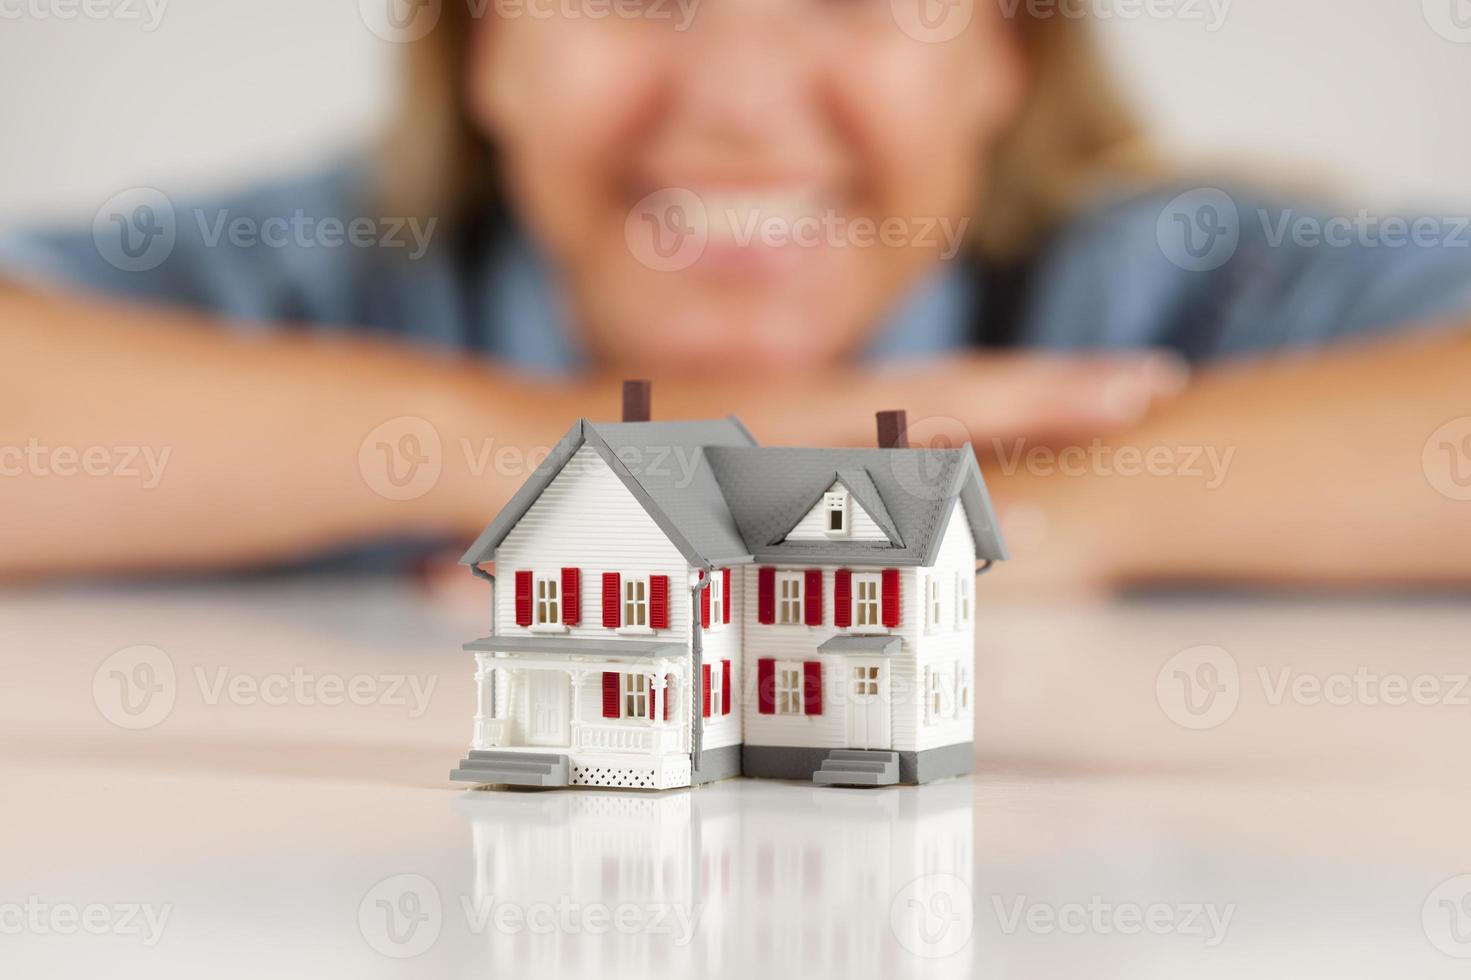 mujer sonriente detrás de la casa modelo en una superficie blanca foto